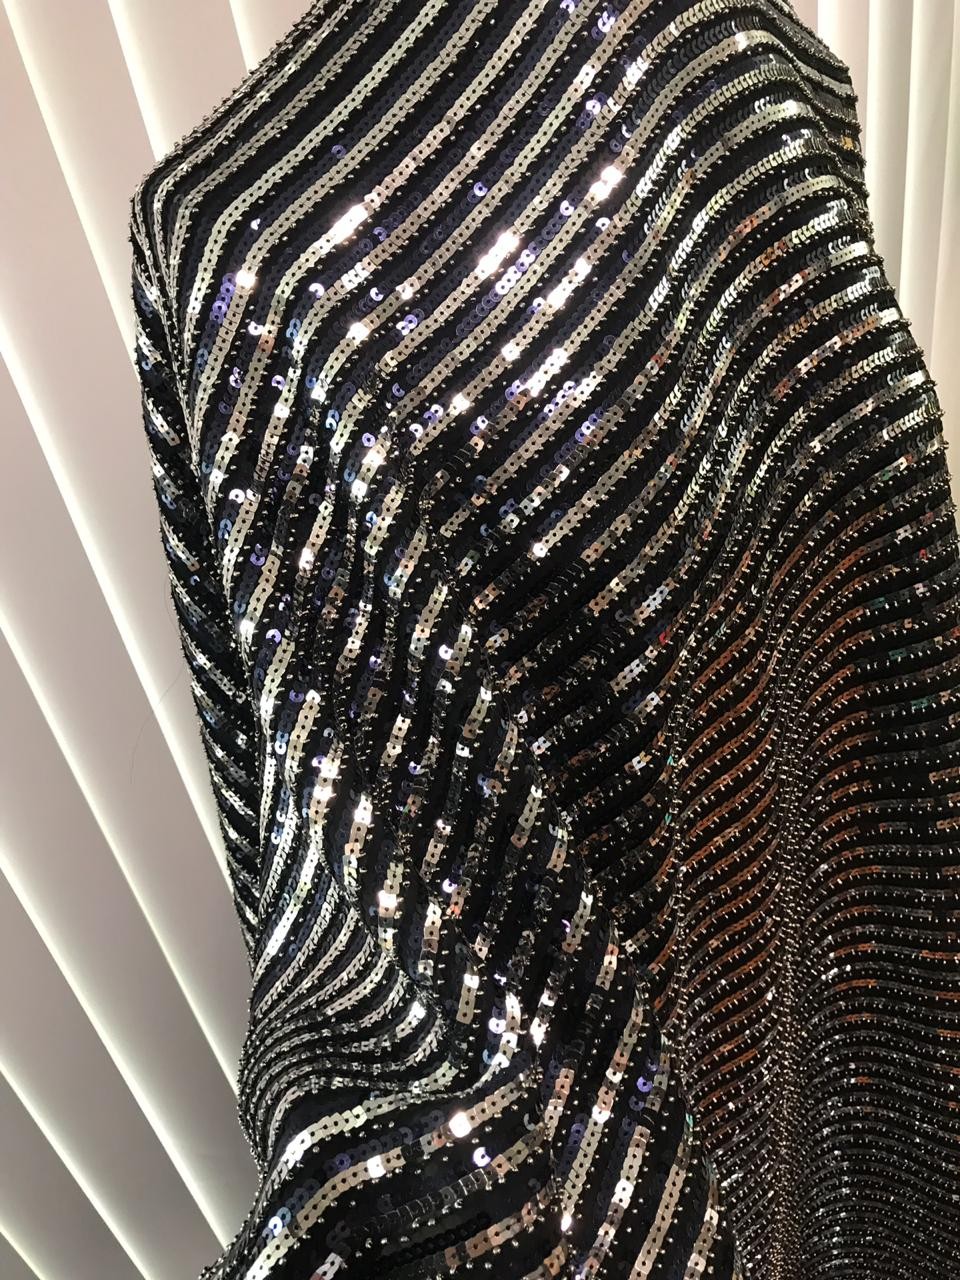 Brilhos do vestido exclusivo da Colcci para Isabeli Fontana (Foto: Reprodução Instagram)